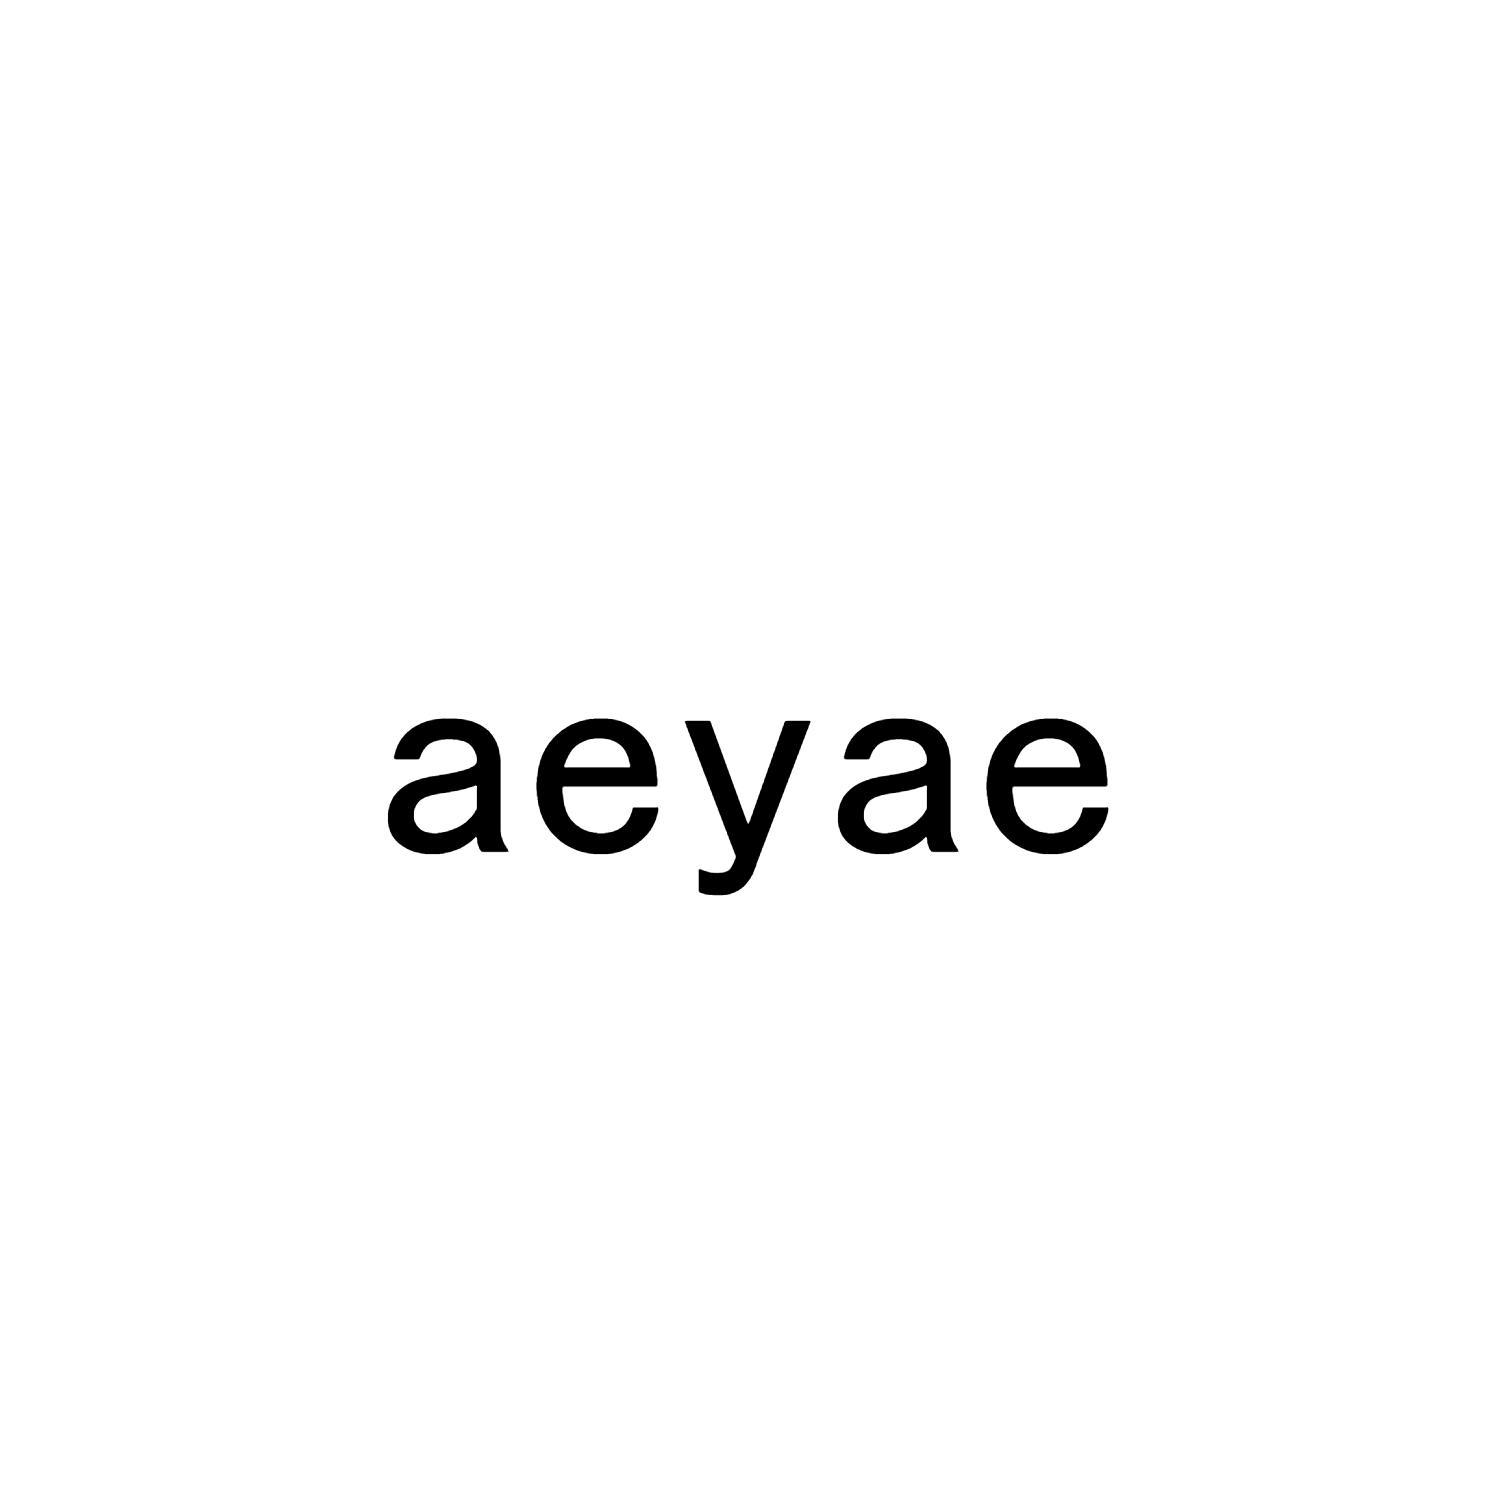 AEYAE